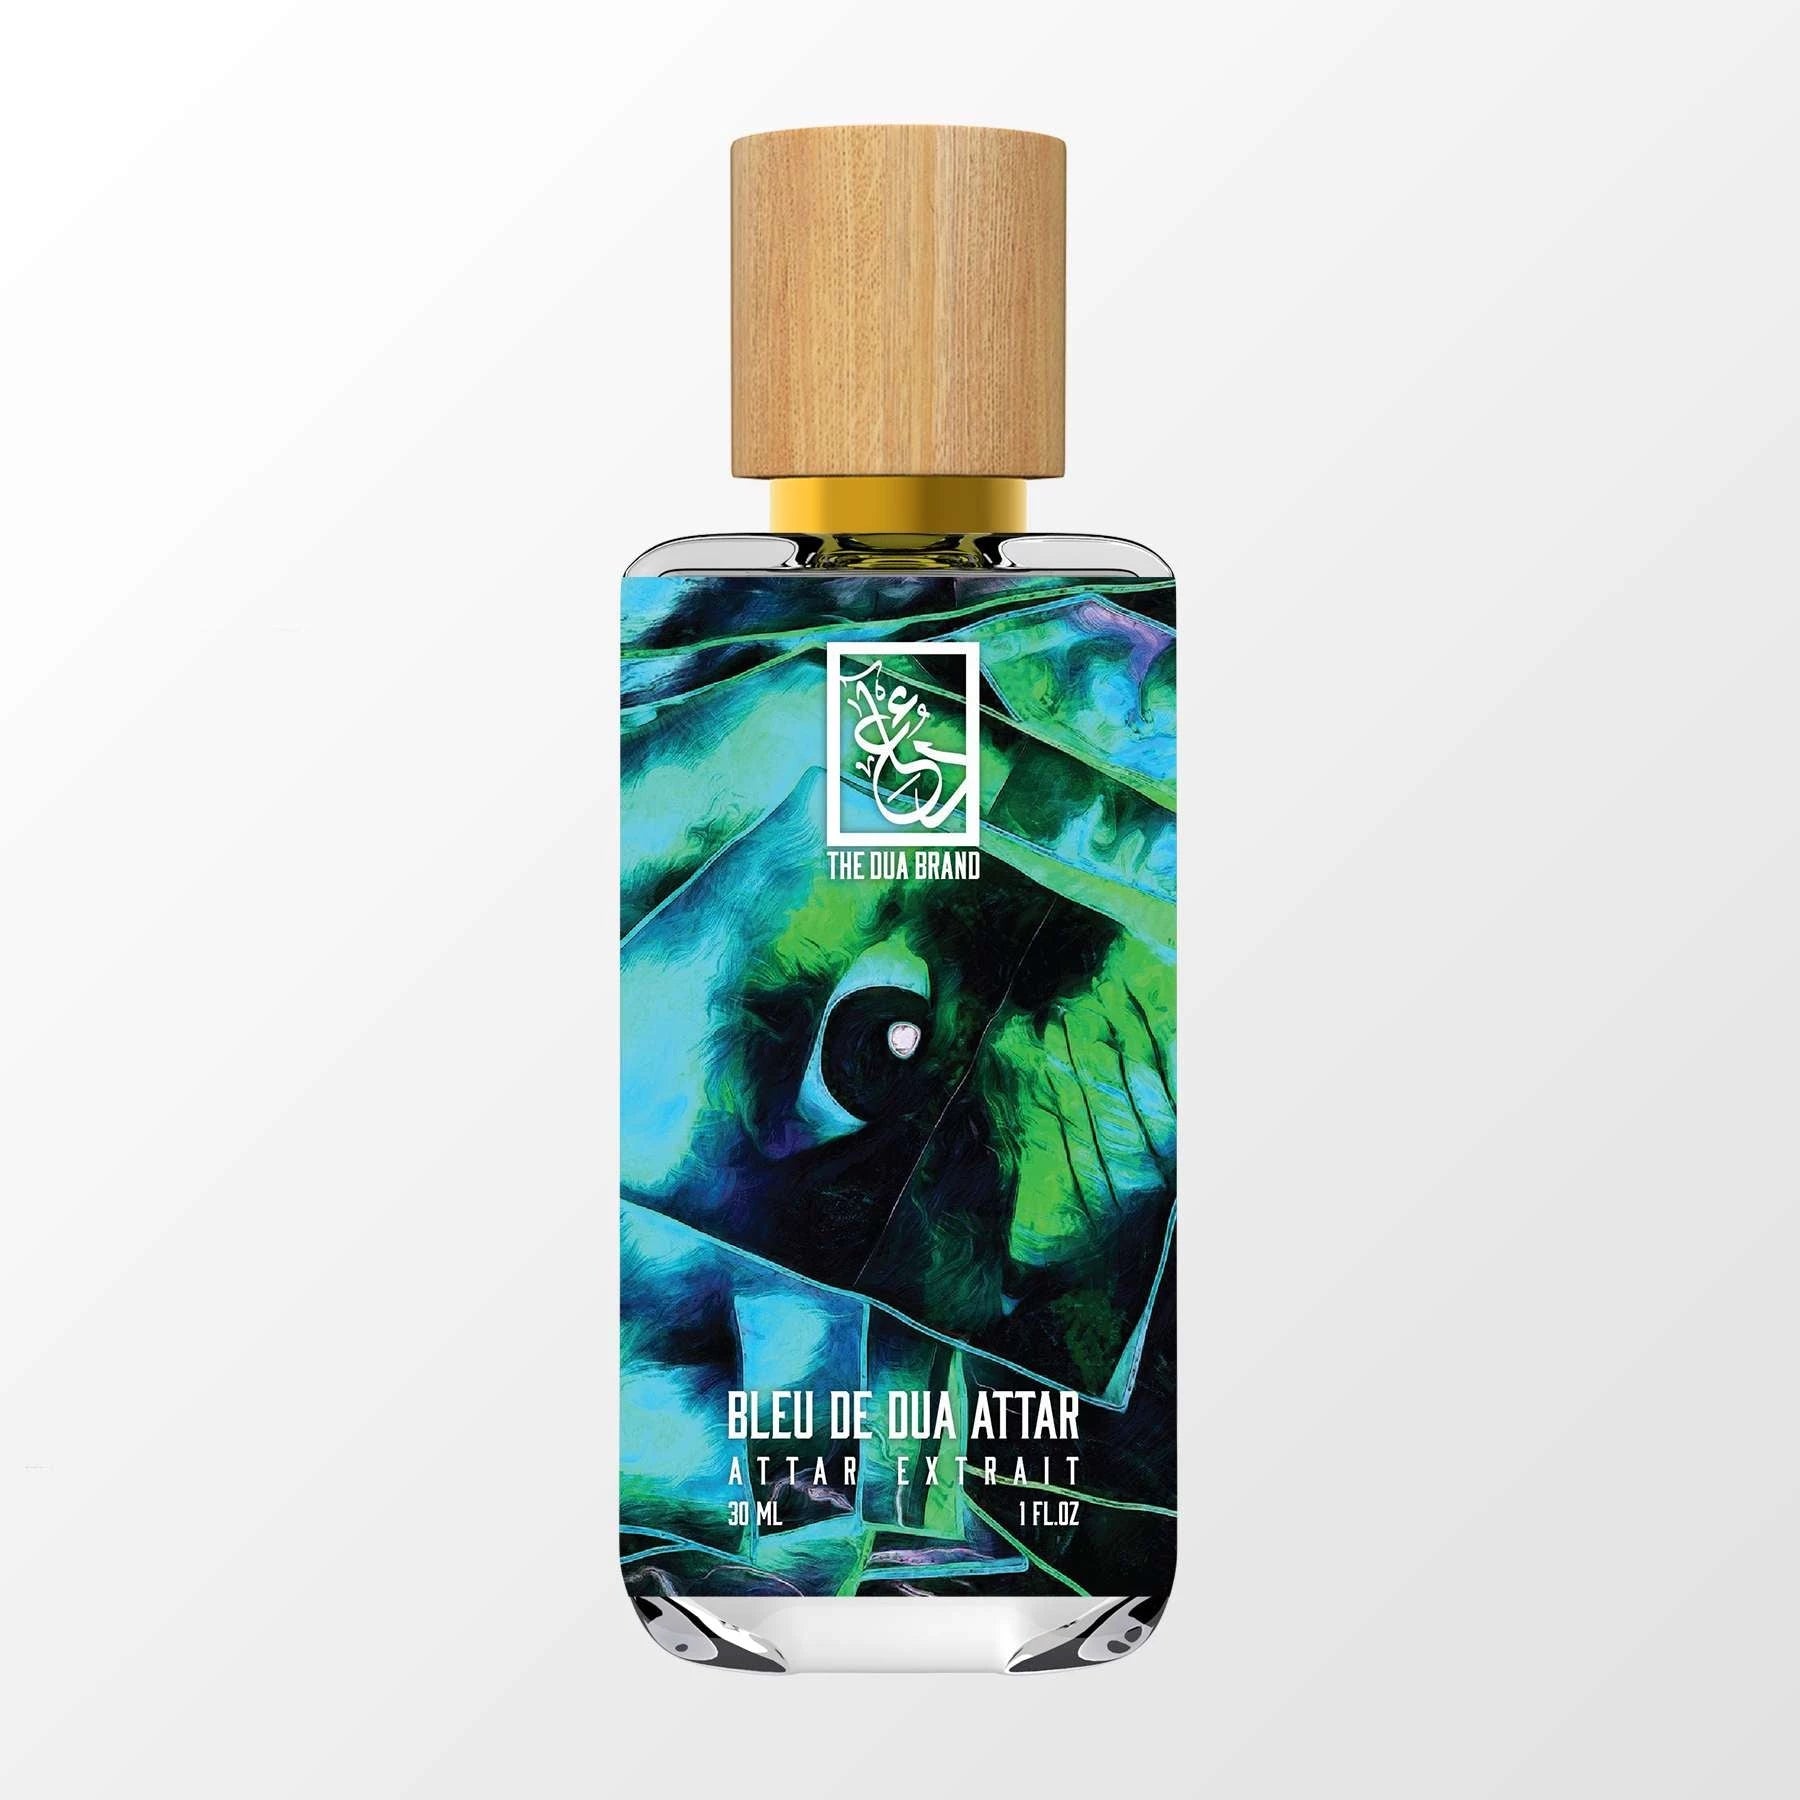 bleu de chanel parfum limited edition